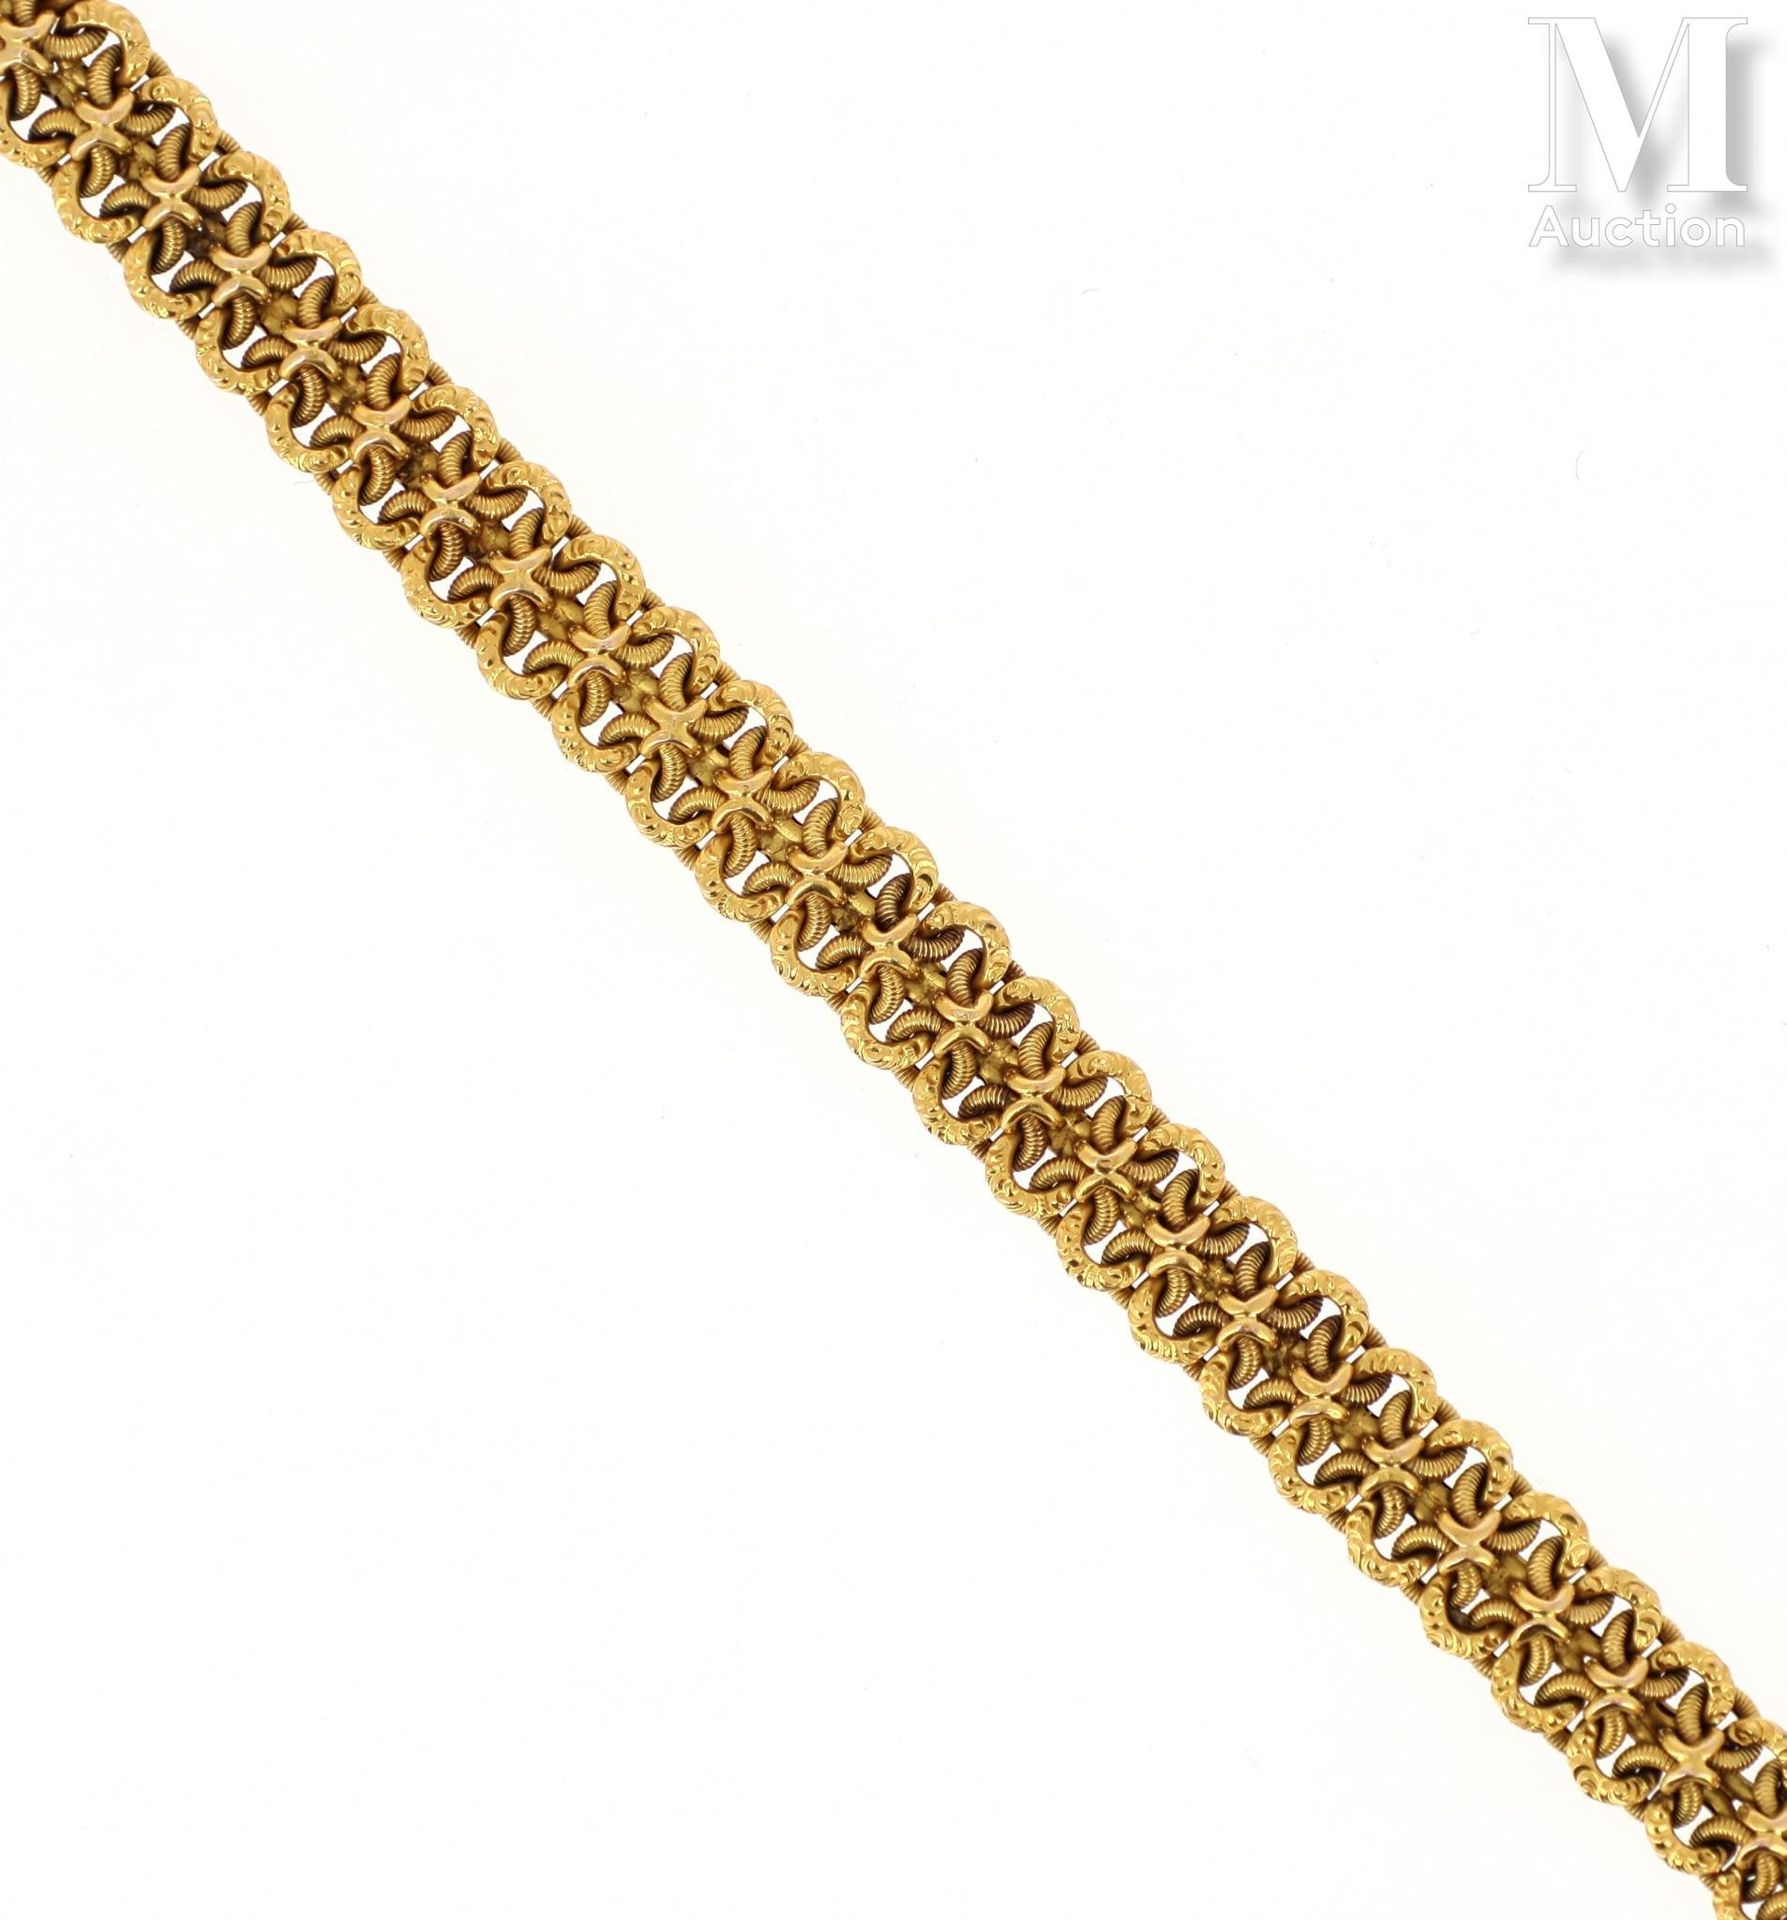 Bracelet or Bracciale in oro giallo 18k (750 millesimi) formato da una maglia fa&hellip;